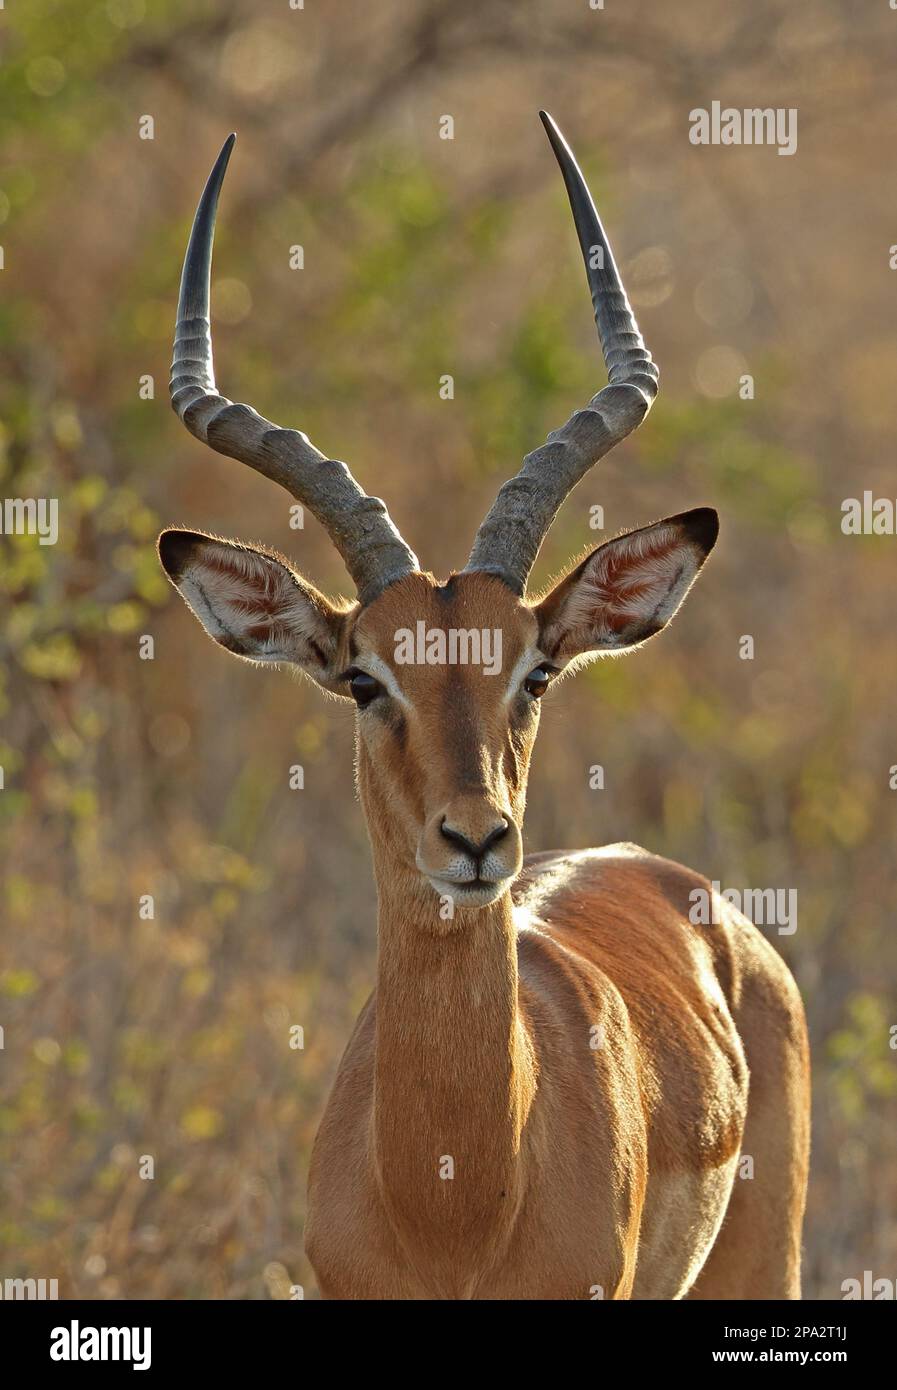 Impala, Black heeled antelope, Impalas (Aepyceros melampus), Black heeled antelopes, Antelopes, Ungulates, Even-toed ungulates, Mammals, Animals Stock Photo